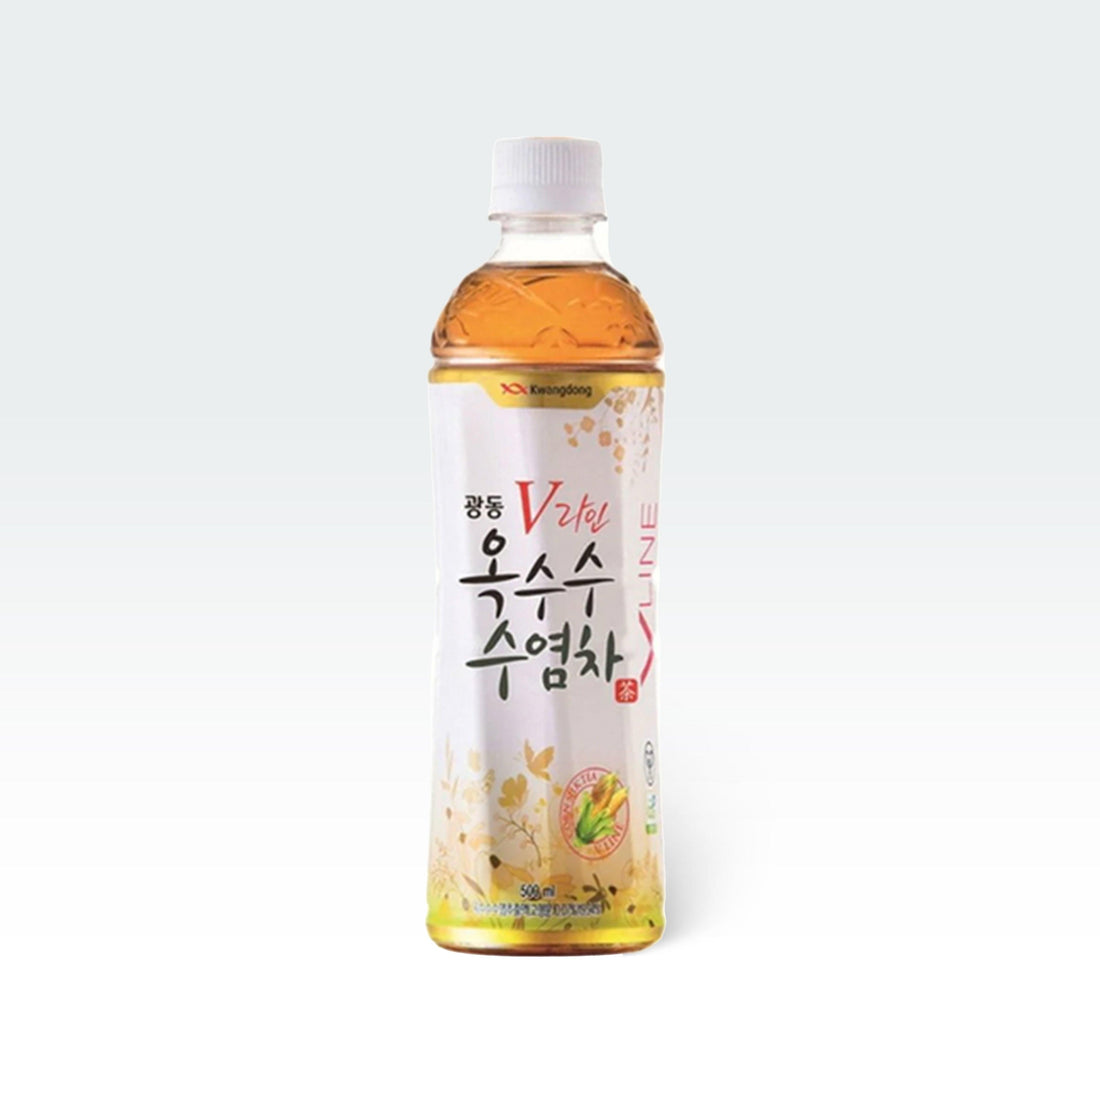 Kwang Dong Corn Silk Tea 16.9oz(500ml) - Anytime Basket